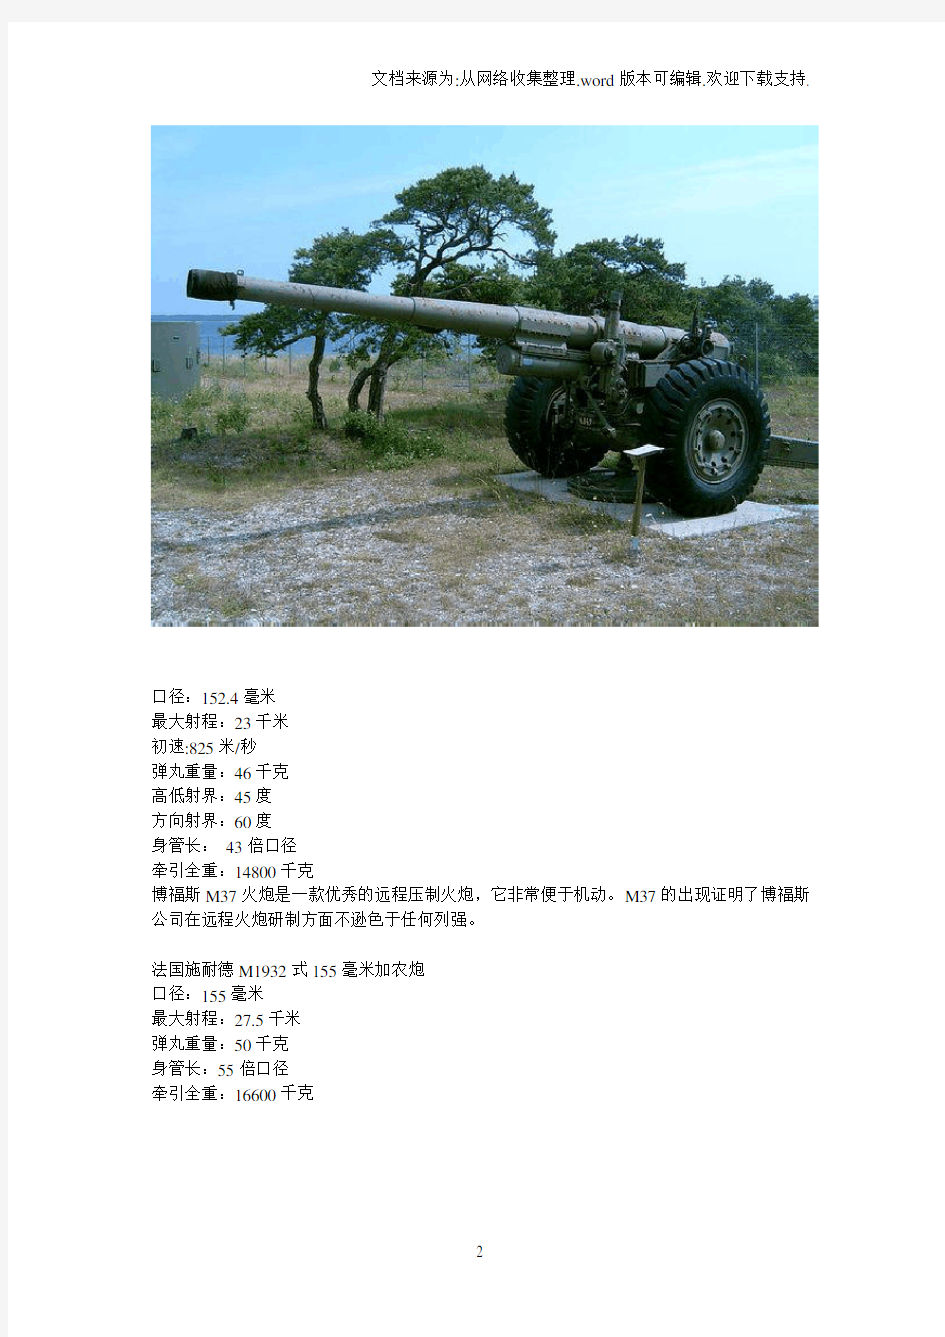 二战时期的6寸加农炮